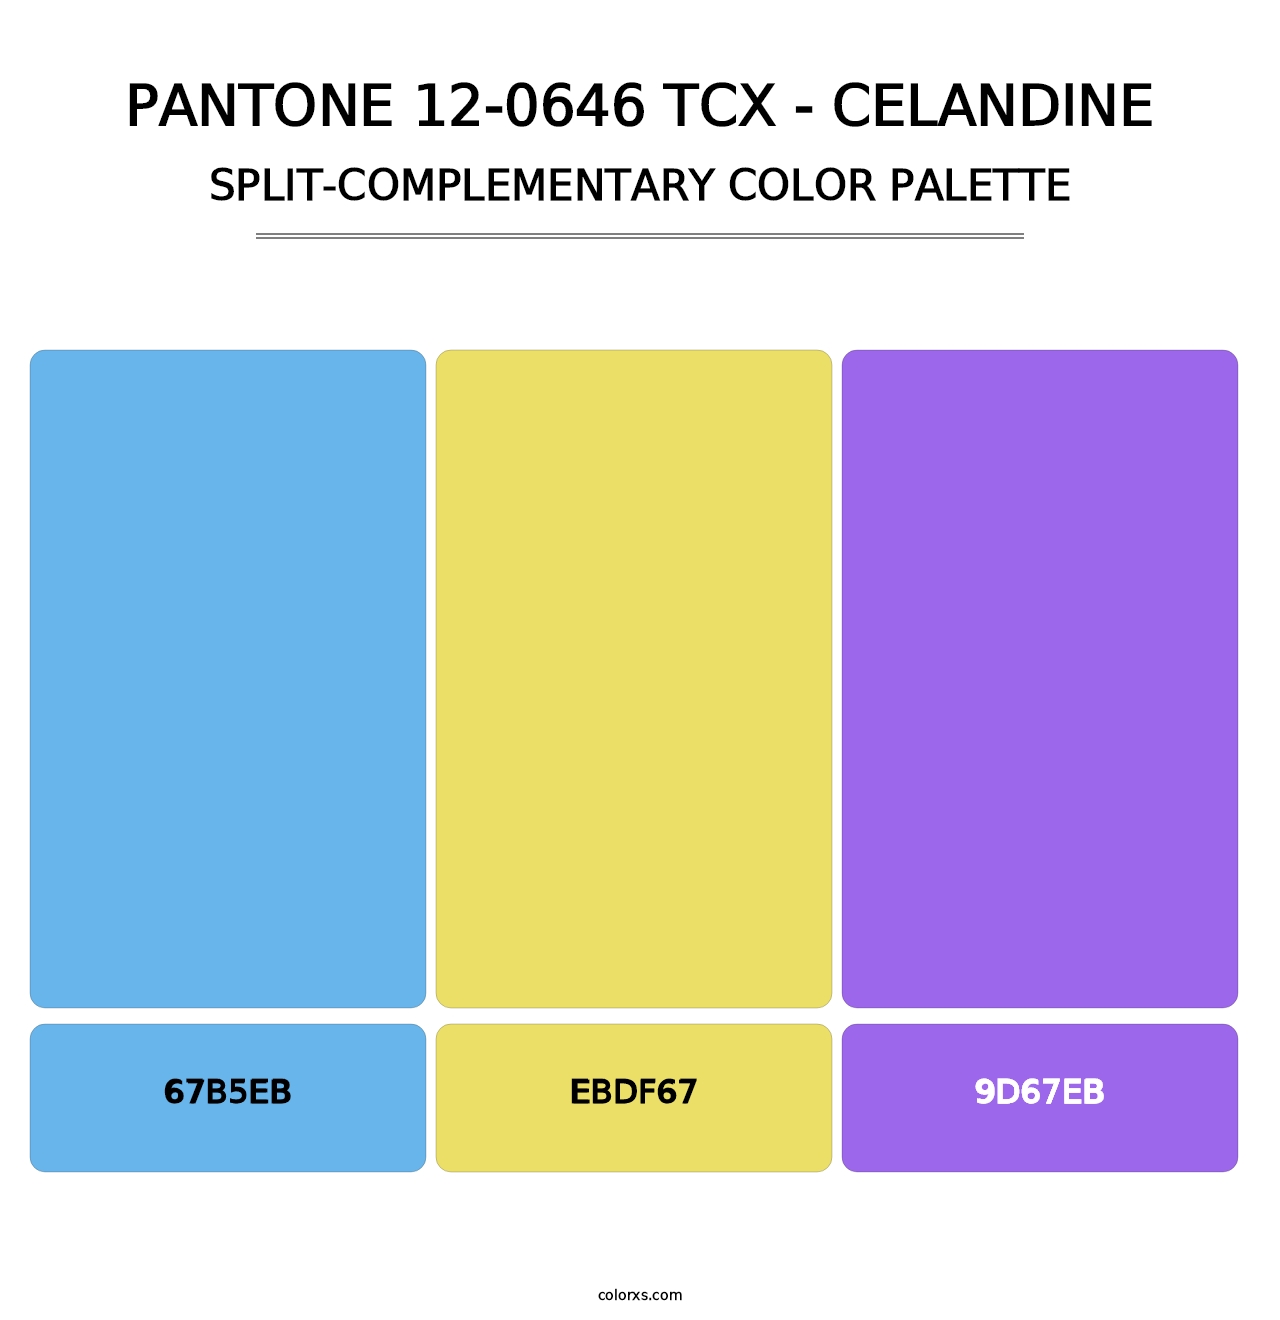 PANTONE 12-0646 TCX - Celandine - Split-Complementary Color Palette